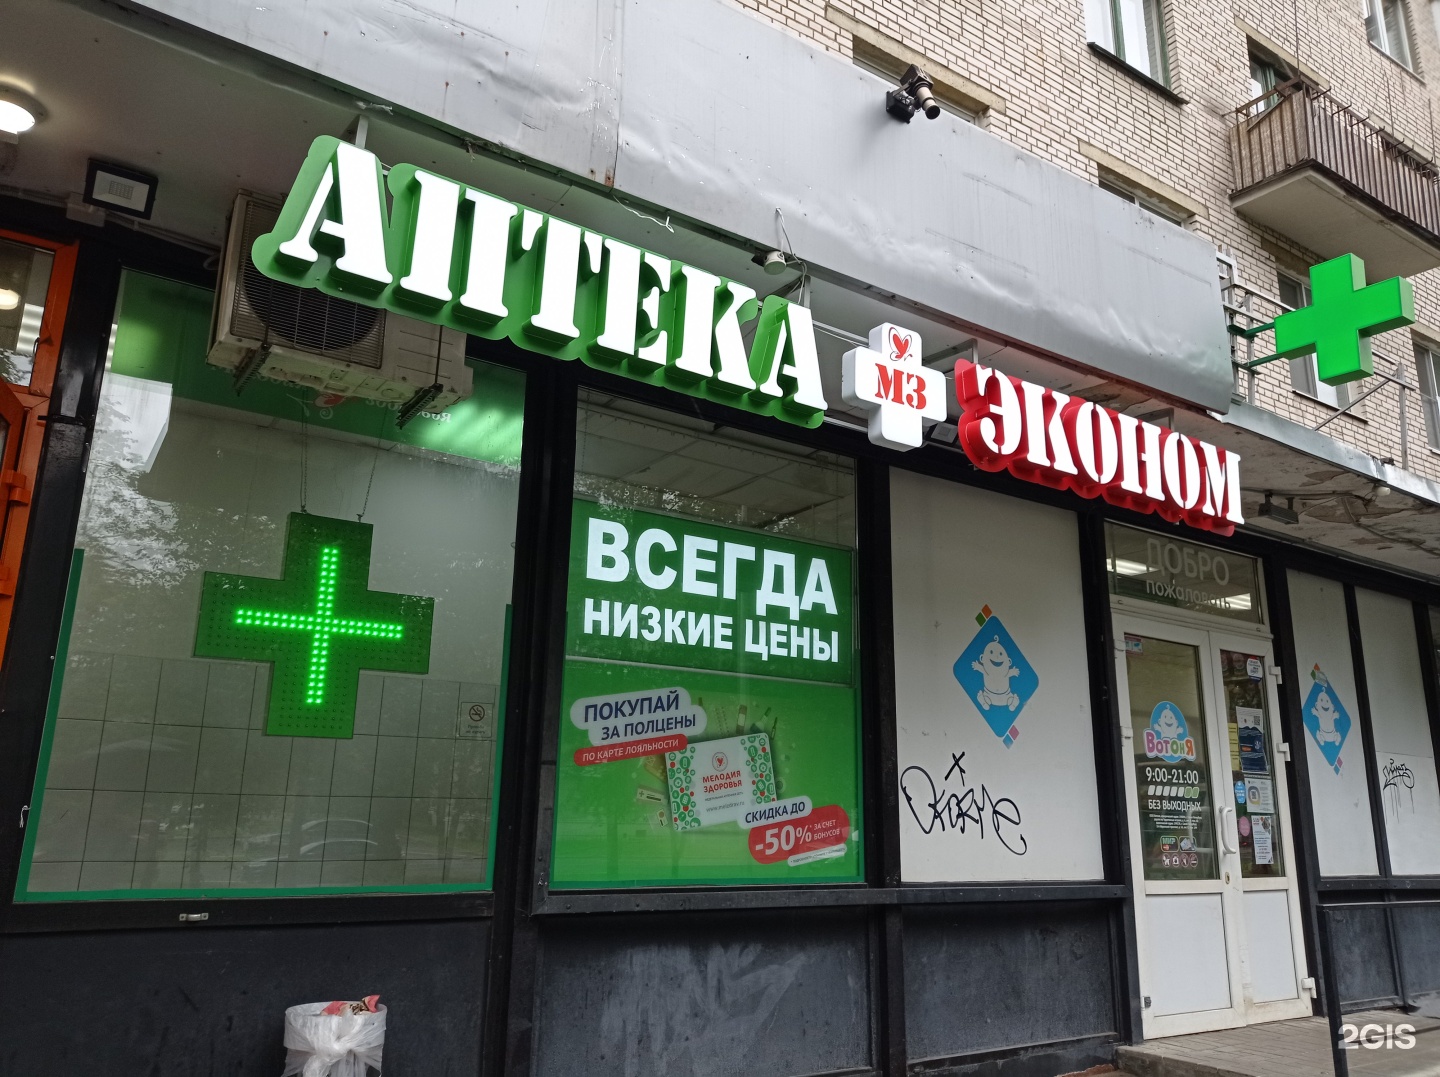 Аптека Мелодия Здоровья Липецк